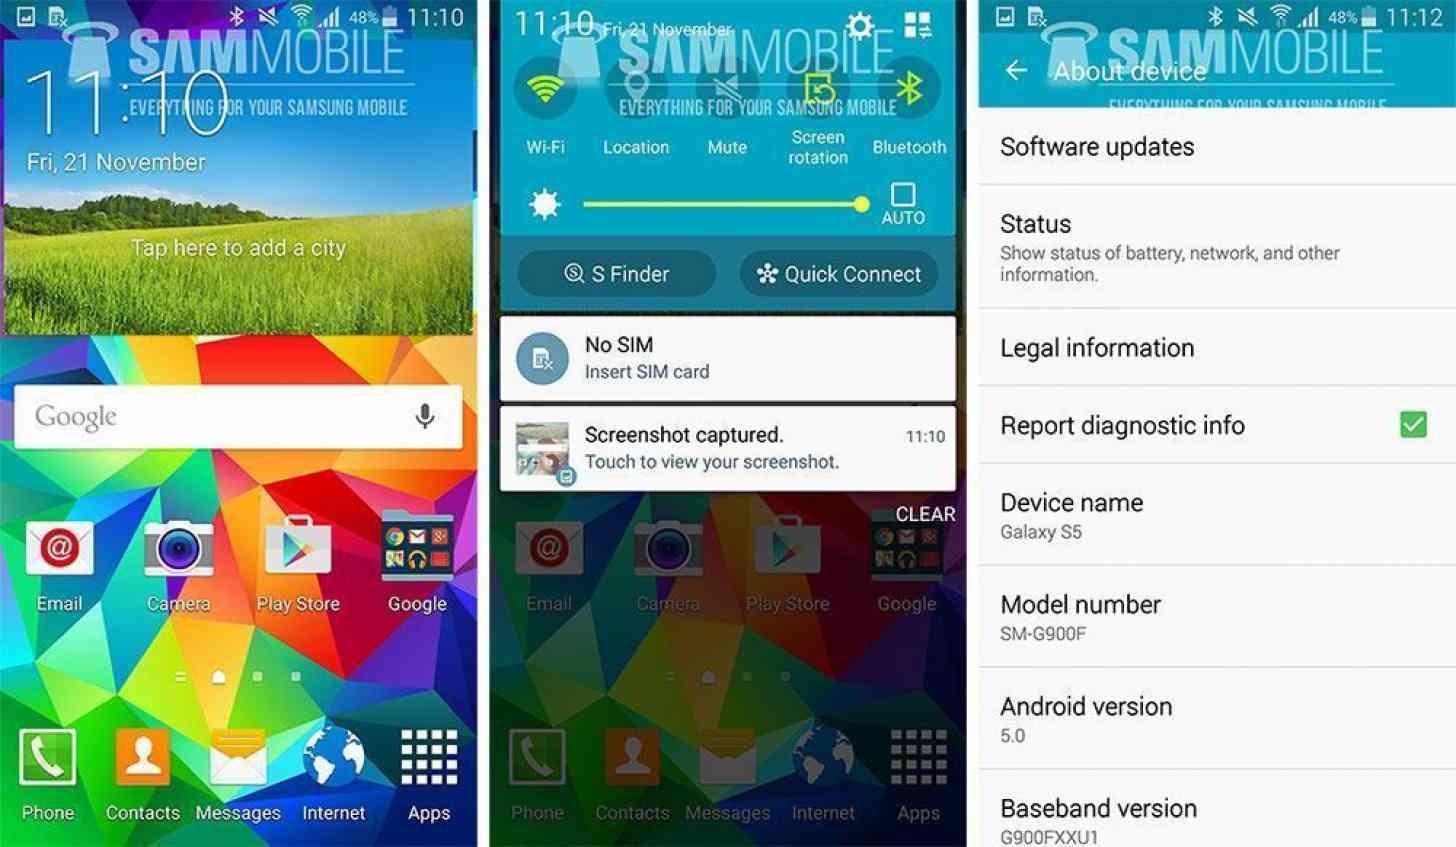 Samsung Galaxy S5 Android 5.0 screenshots